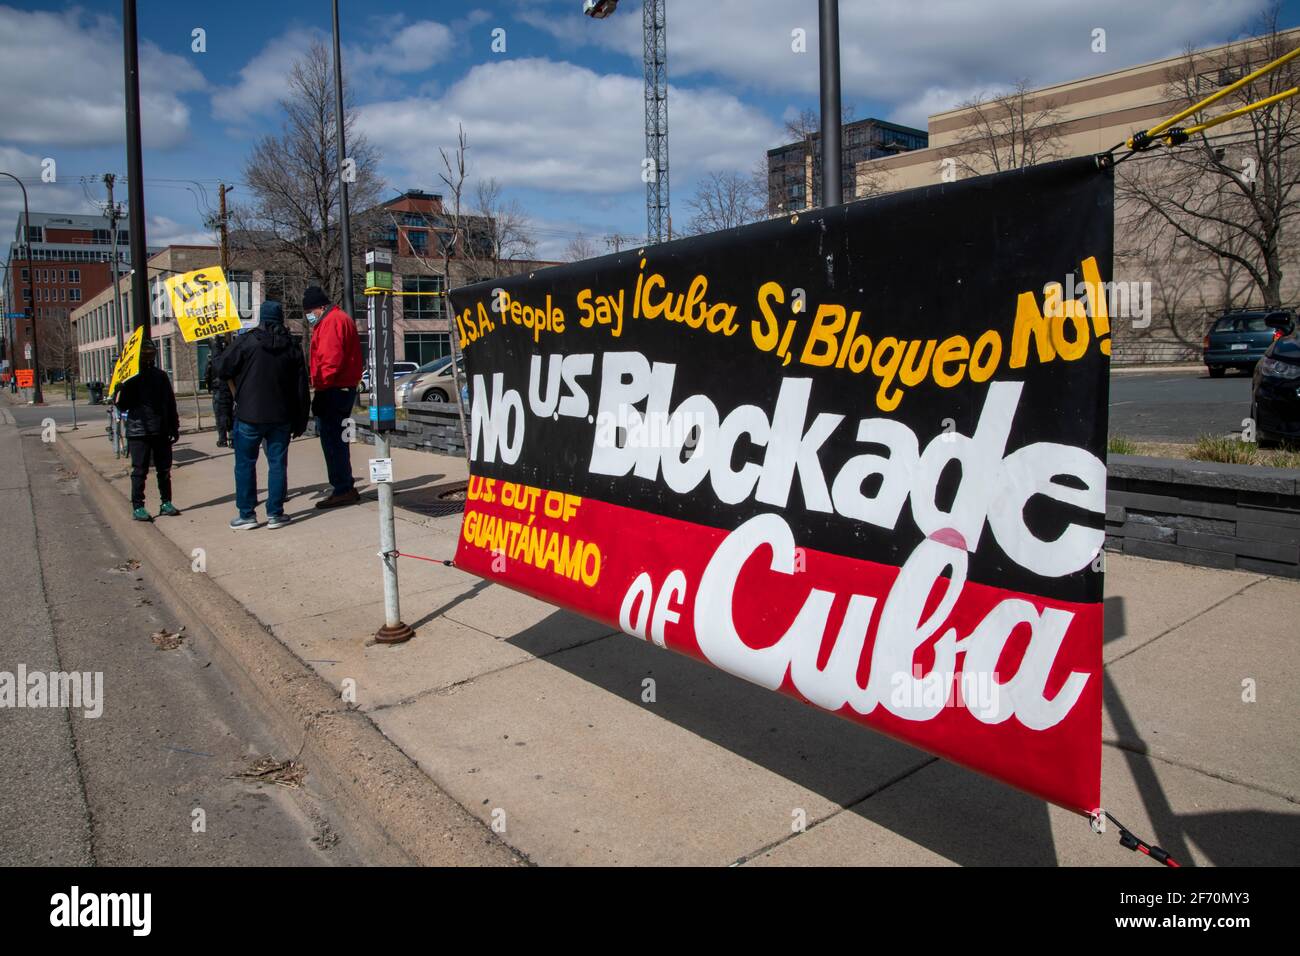 Minneapolis, Minnesota. 27 mars 2021. Biden, défait la protestation de Cuba. Les manifestants exigent que l'administration Biden prenne des mesures immédiates pour faire marche arrière Banque D'Images